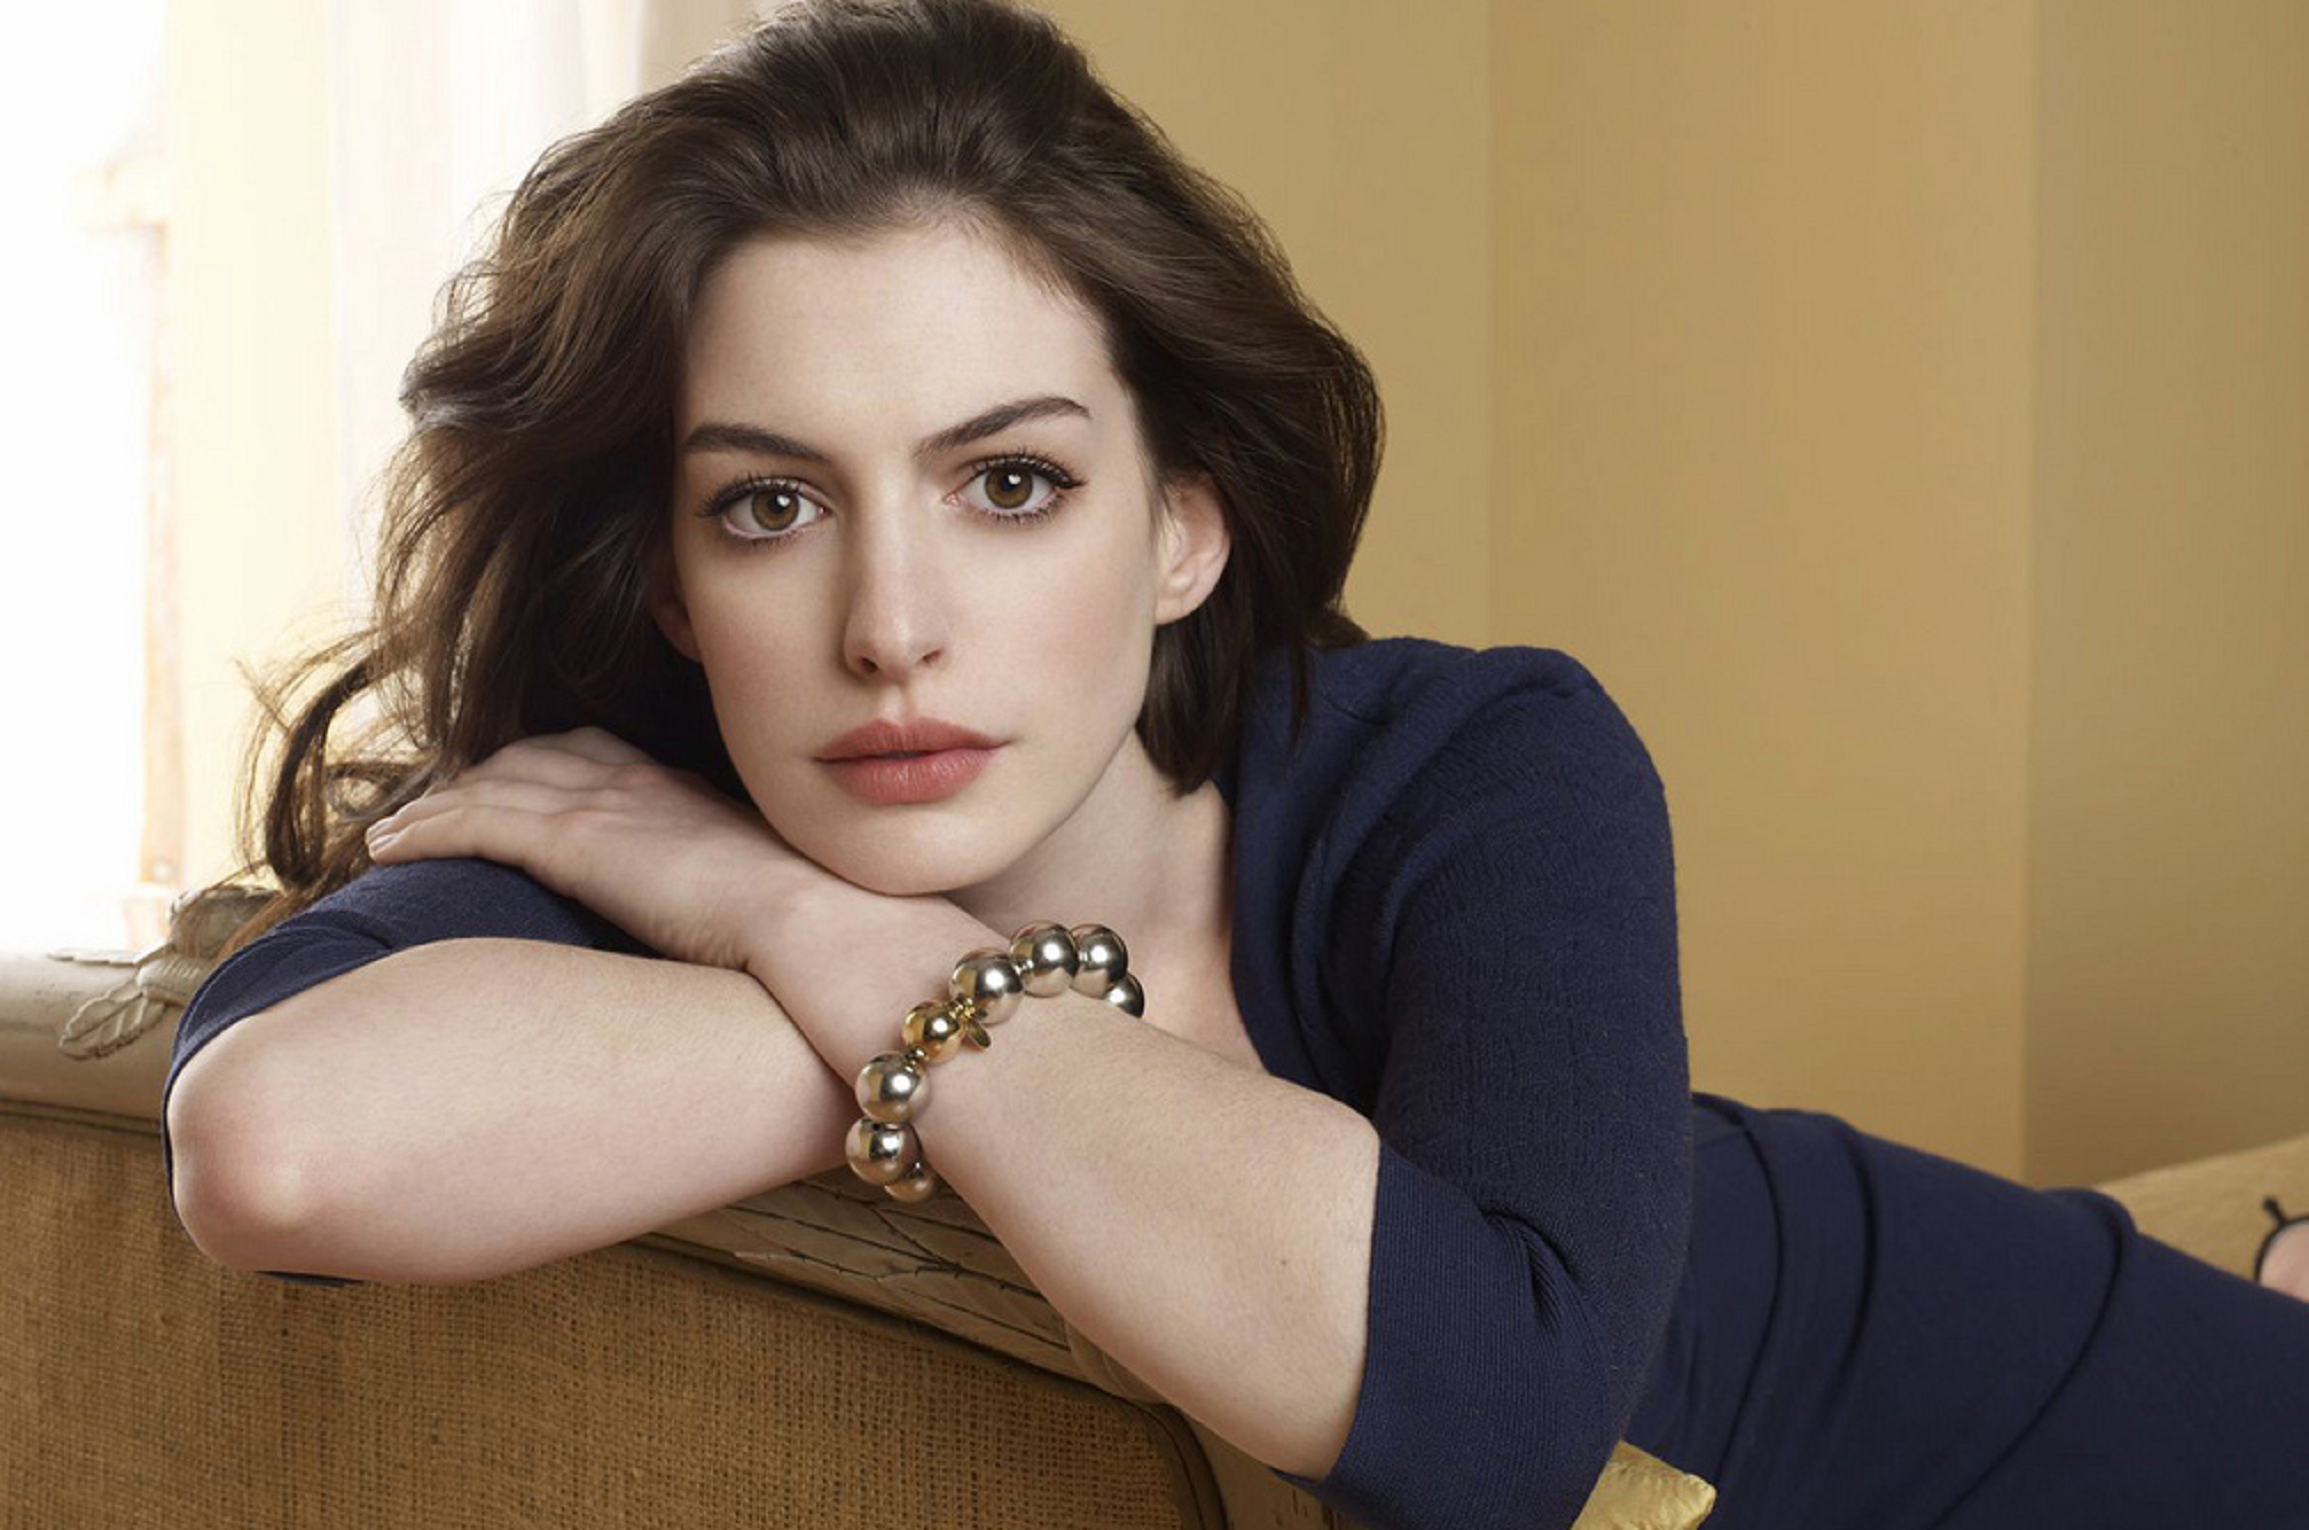 Un canvi espectacular: Així era Anne Hathaway d'adolescent